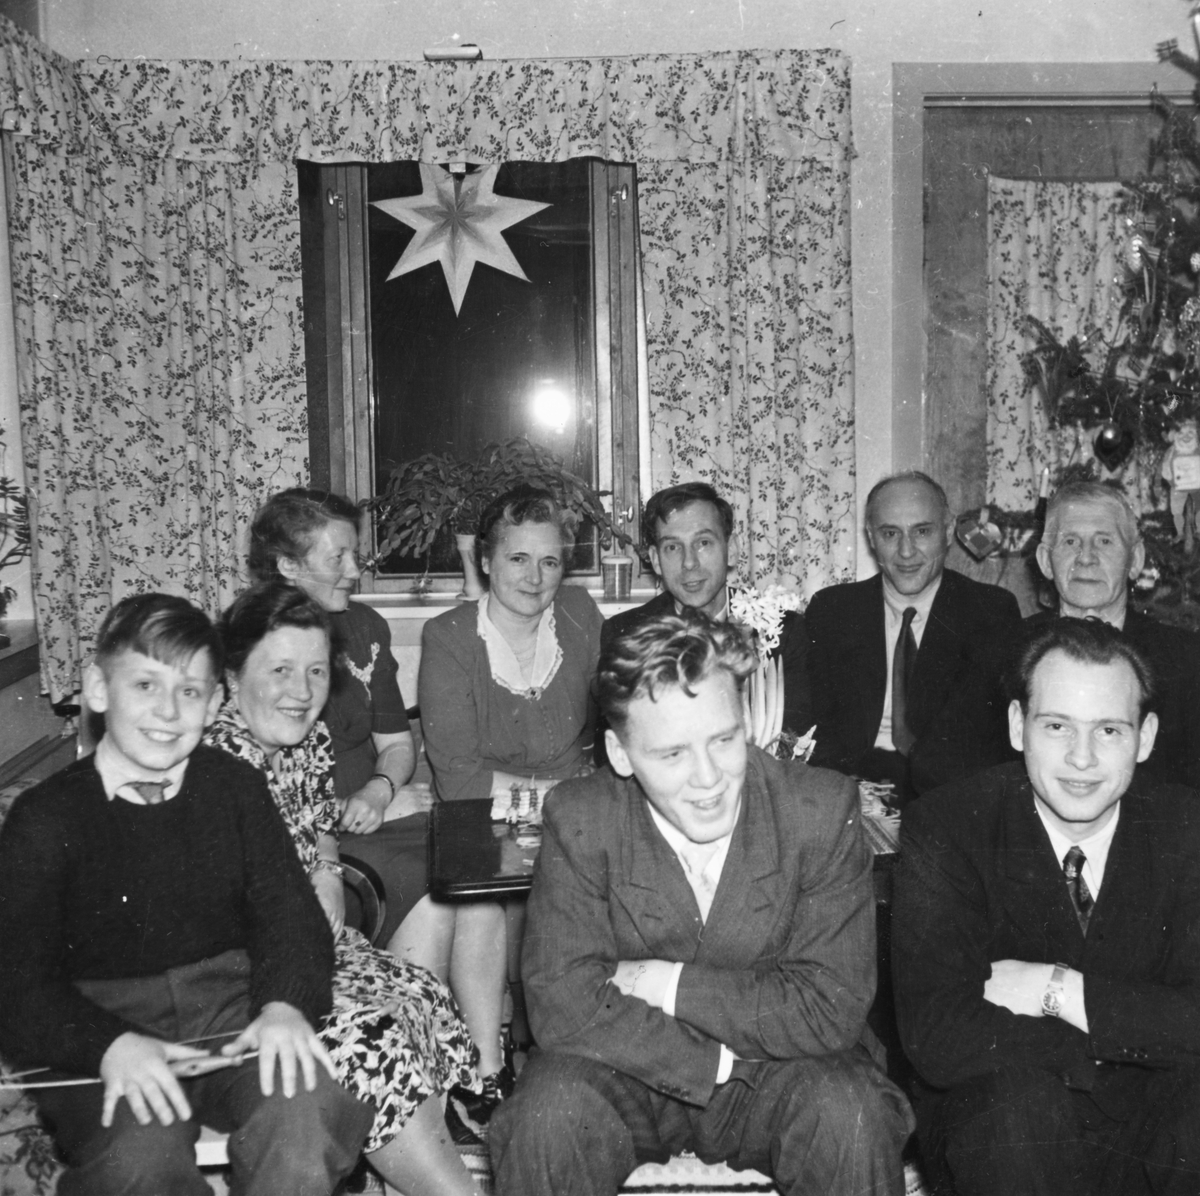 Gruppebilde av unge og gamle i stua på julaften.